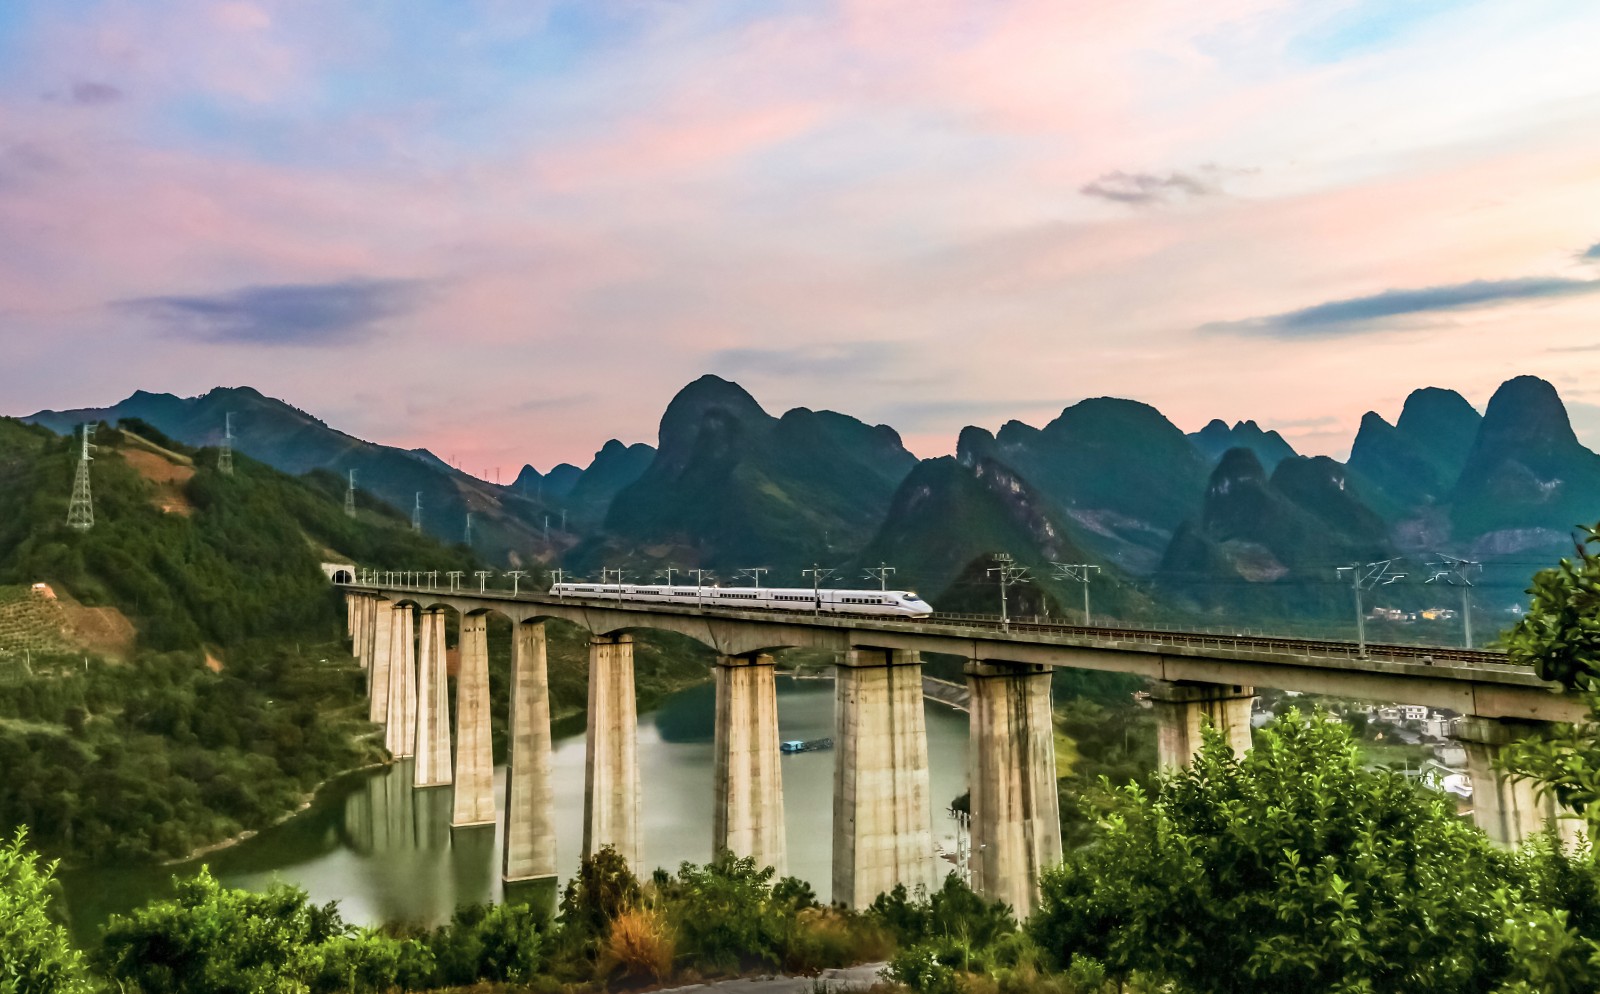 的贵广高铁是一条可以尽览南中国山水风光和民族风情的"最美风景线"